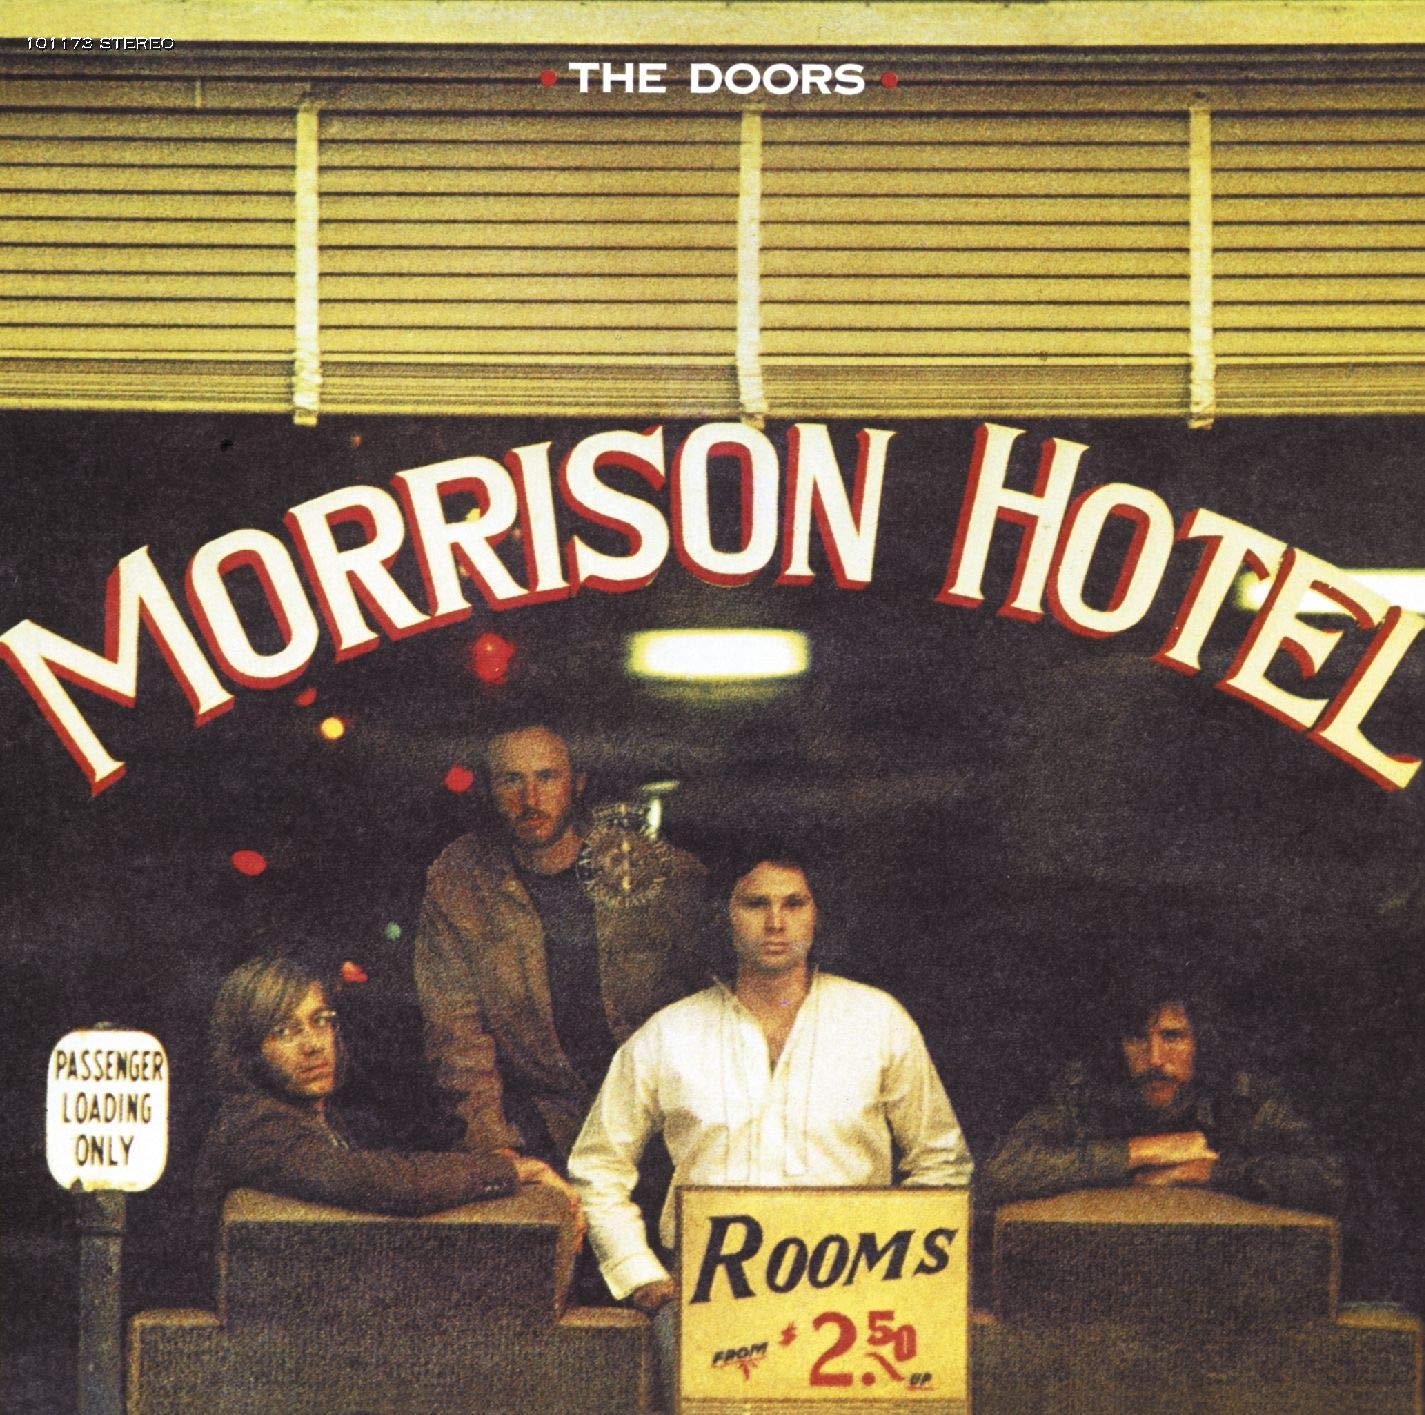 Hotel Morrison. Puntúa y comenta (no más de 3 palabras)  The-Doors-Morrison-Hotel-comprar-vinilo-lp